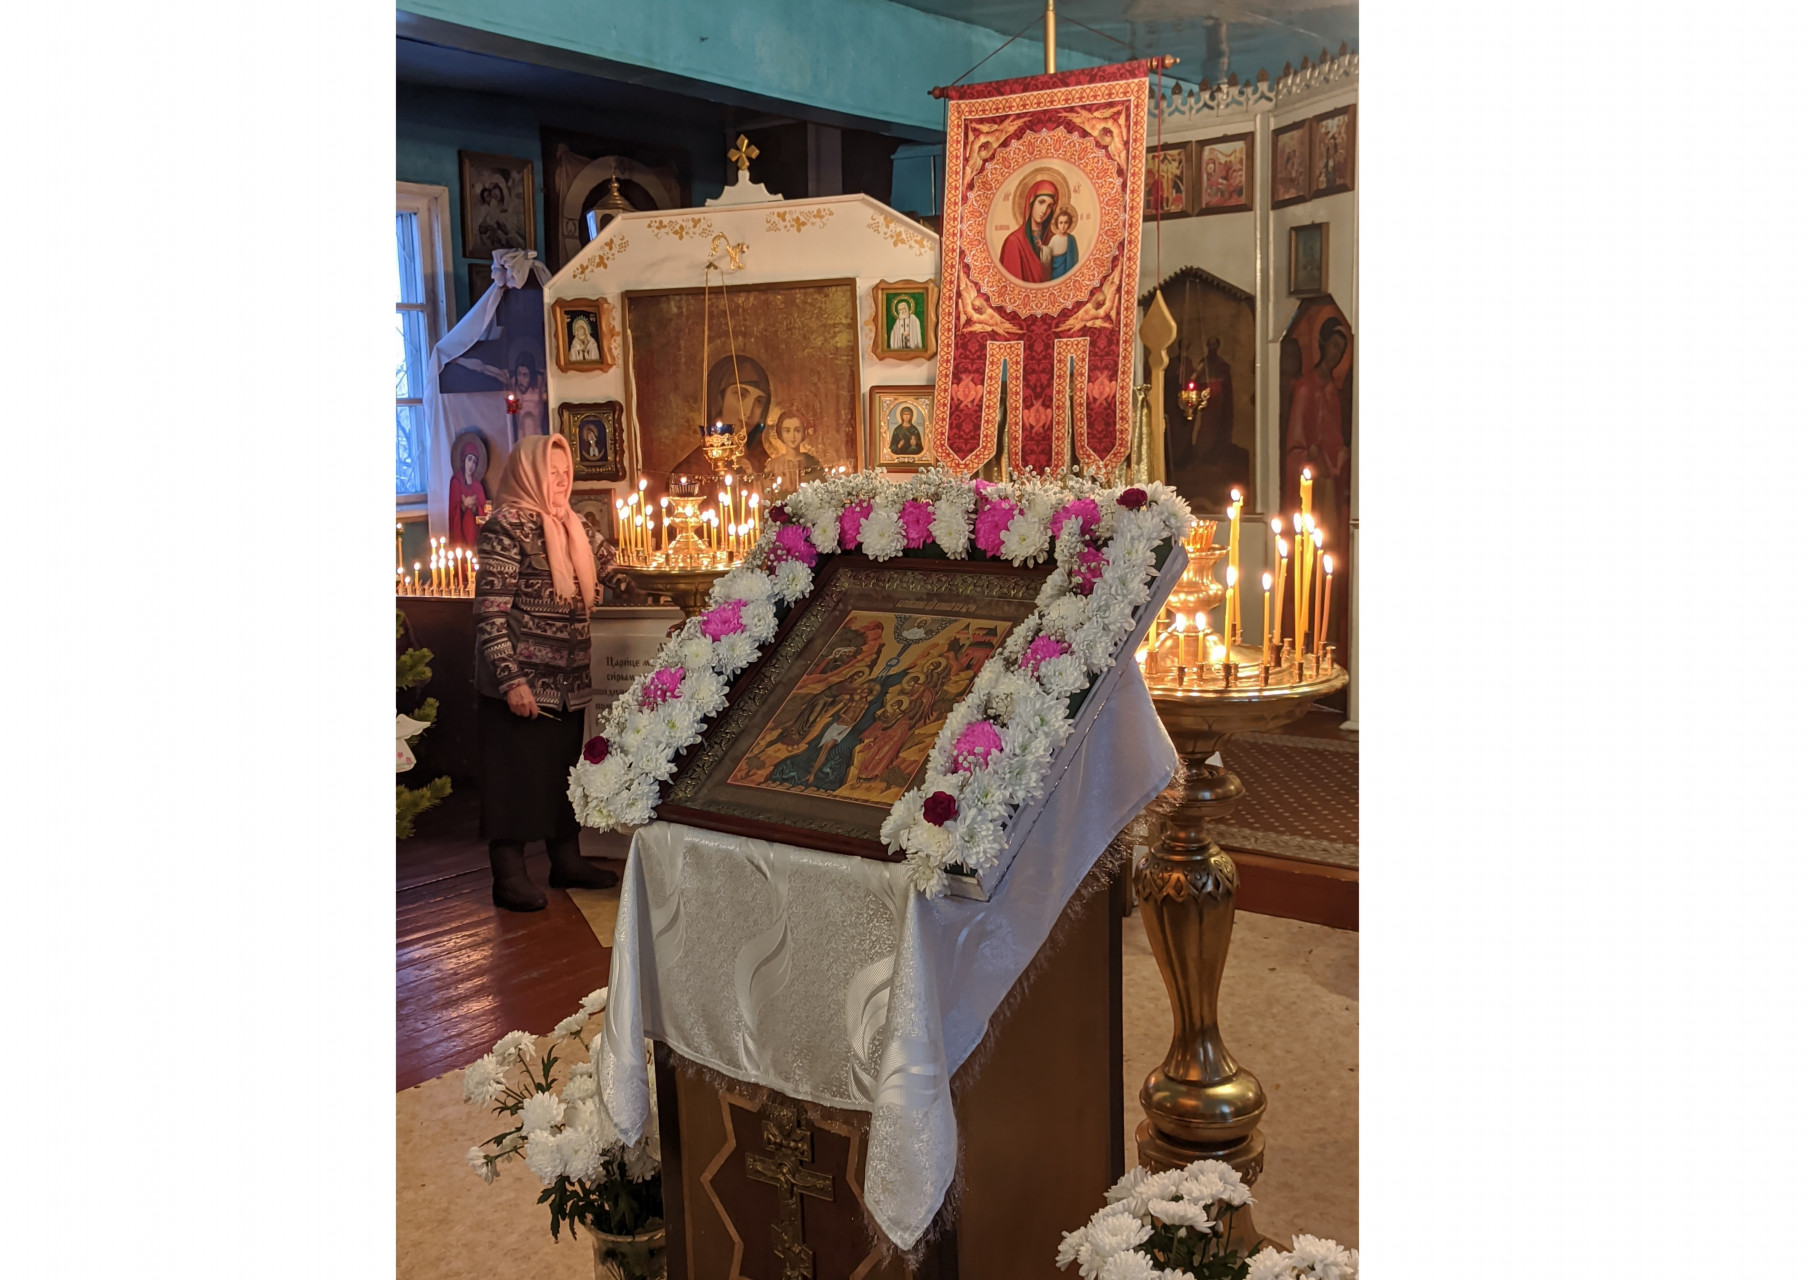 В праздник помолиться, поклониться образам в храме - святое дело. Православным всегда есть о чем попросить святых.